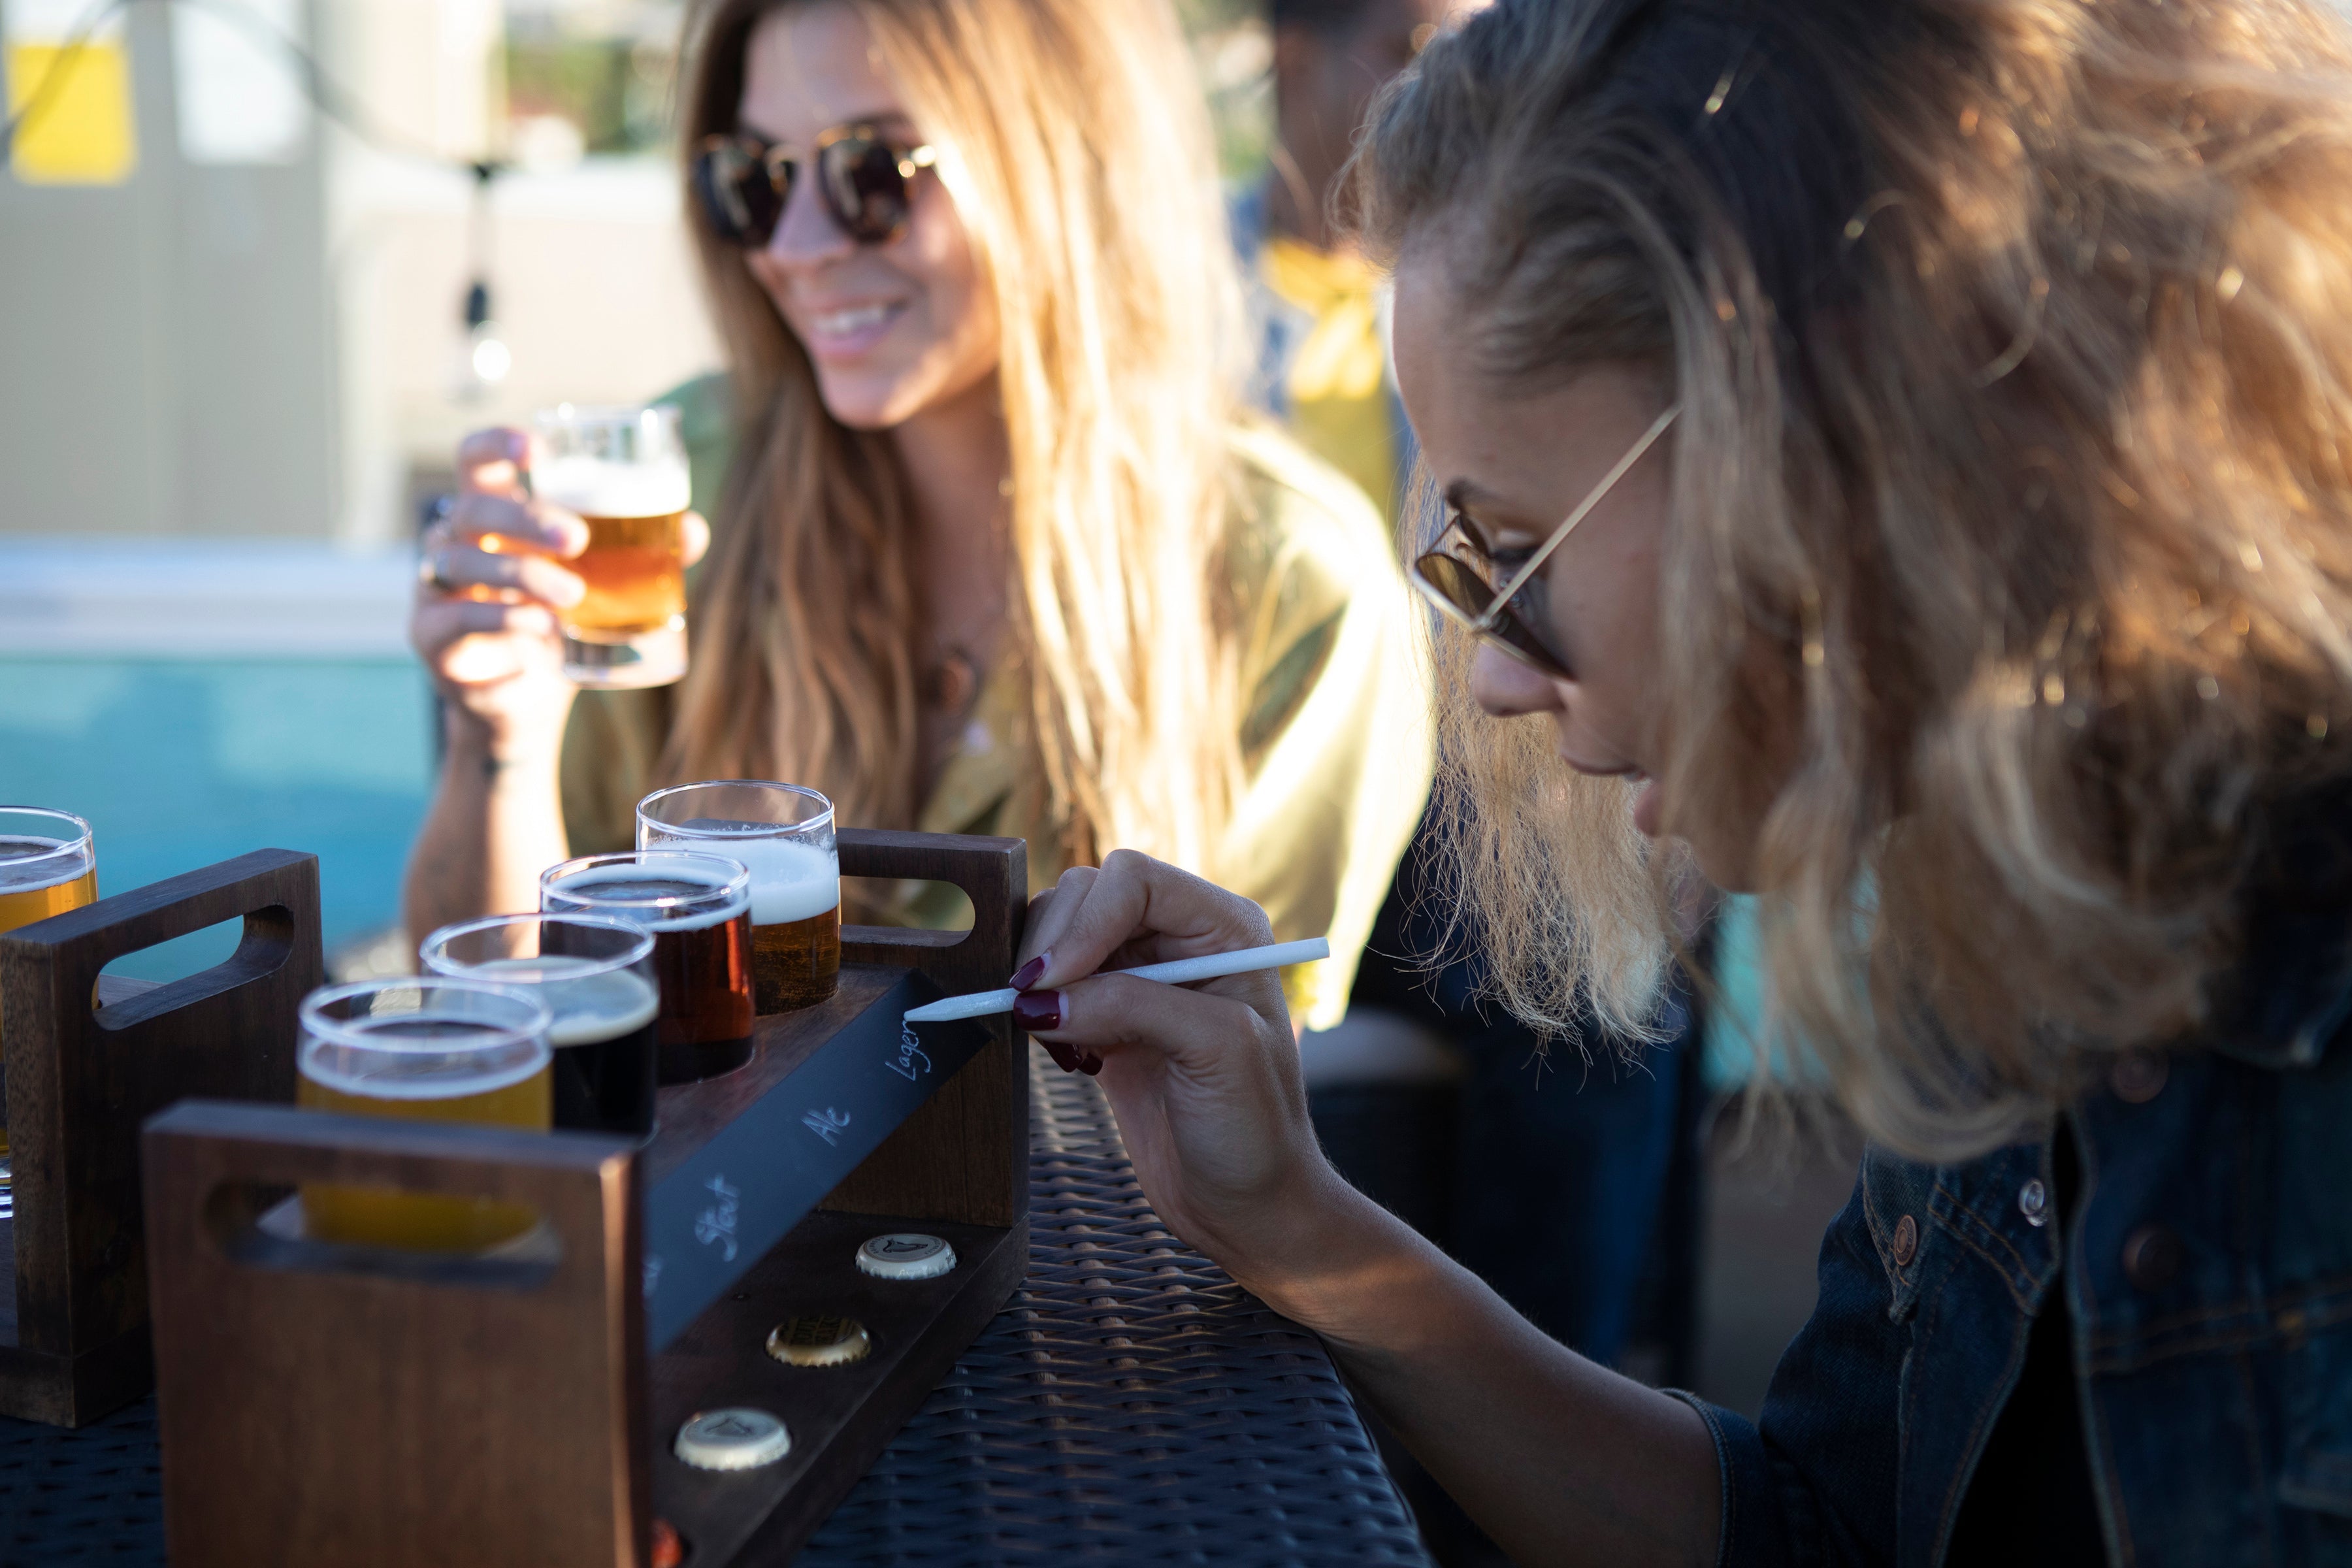 Los Angeles Rams - Craft Beer Flight Beverage Sampler